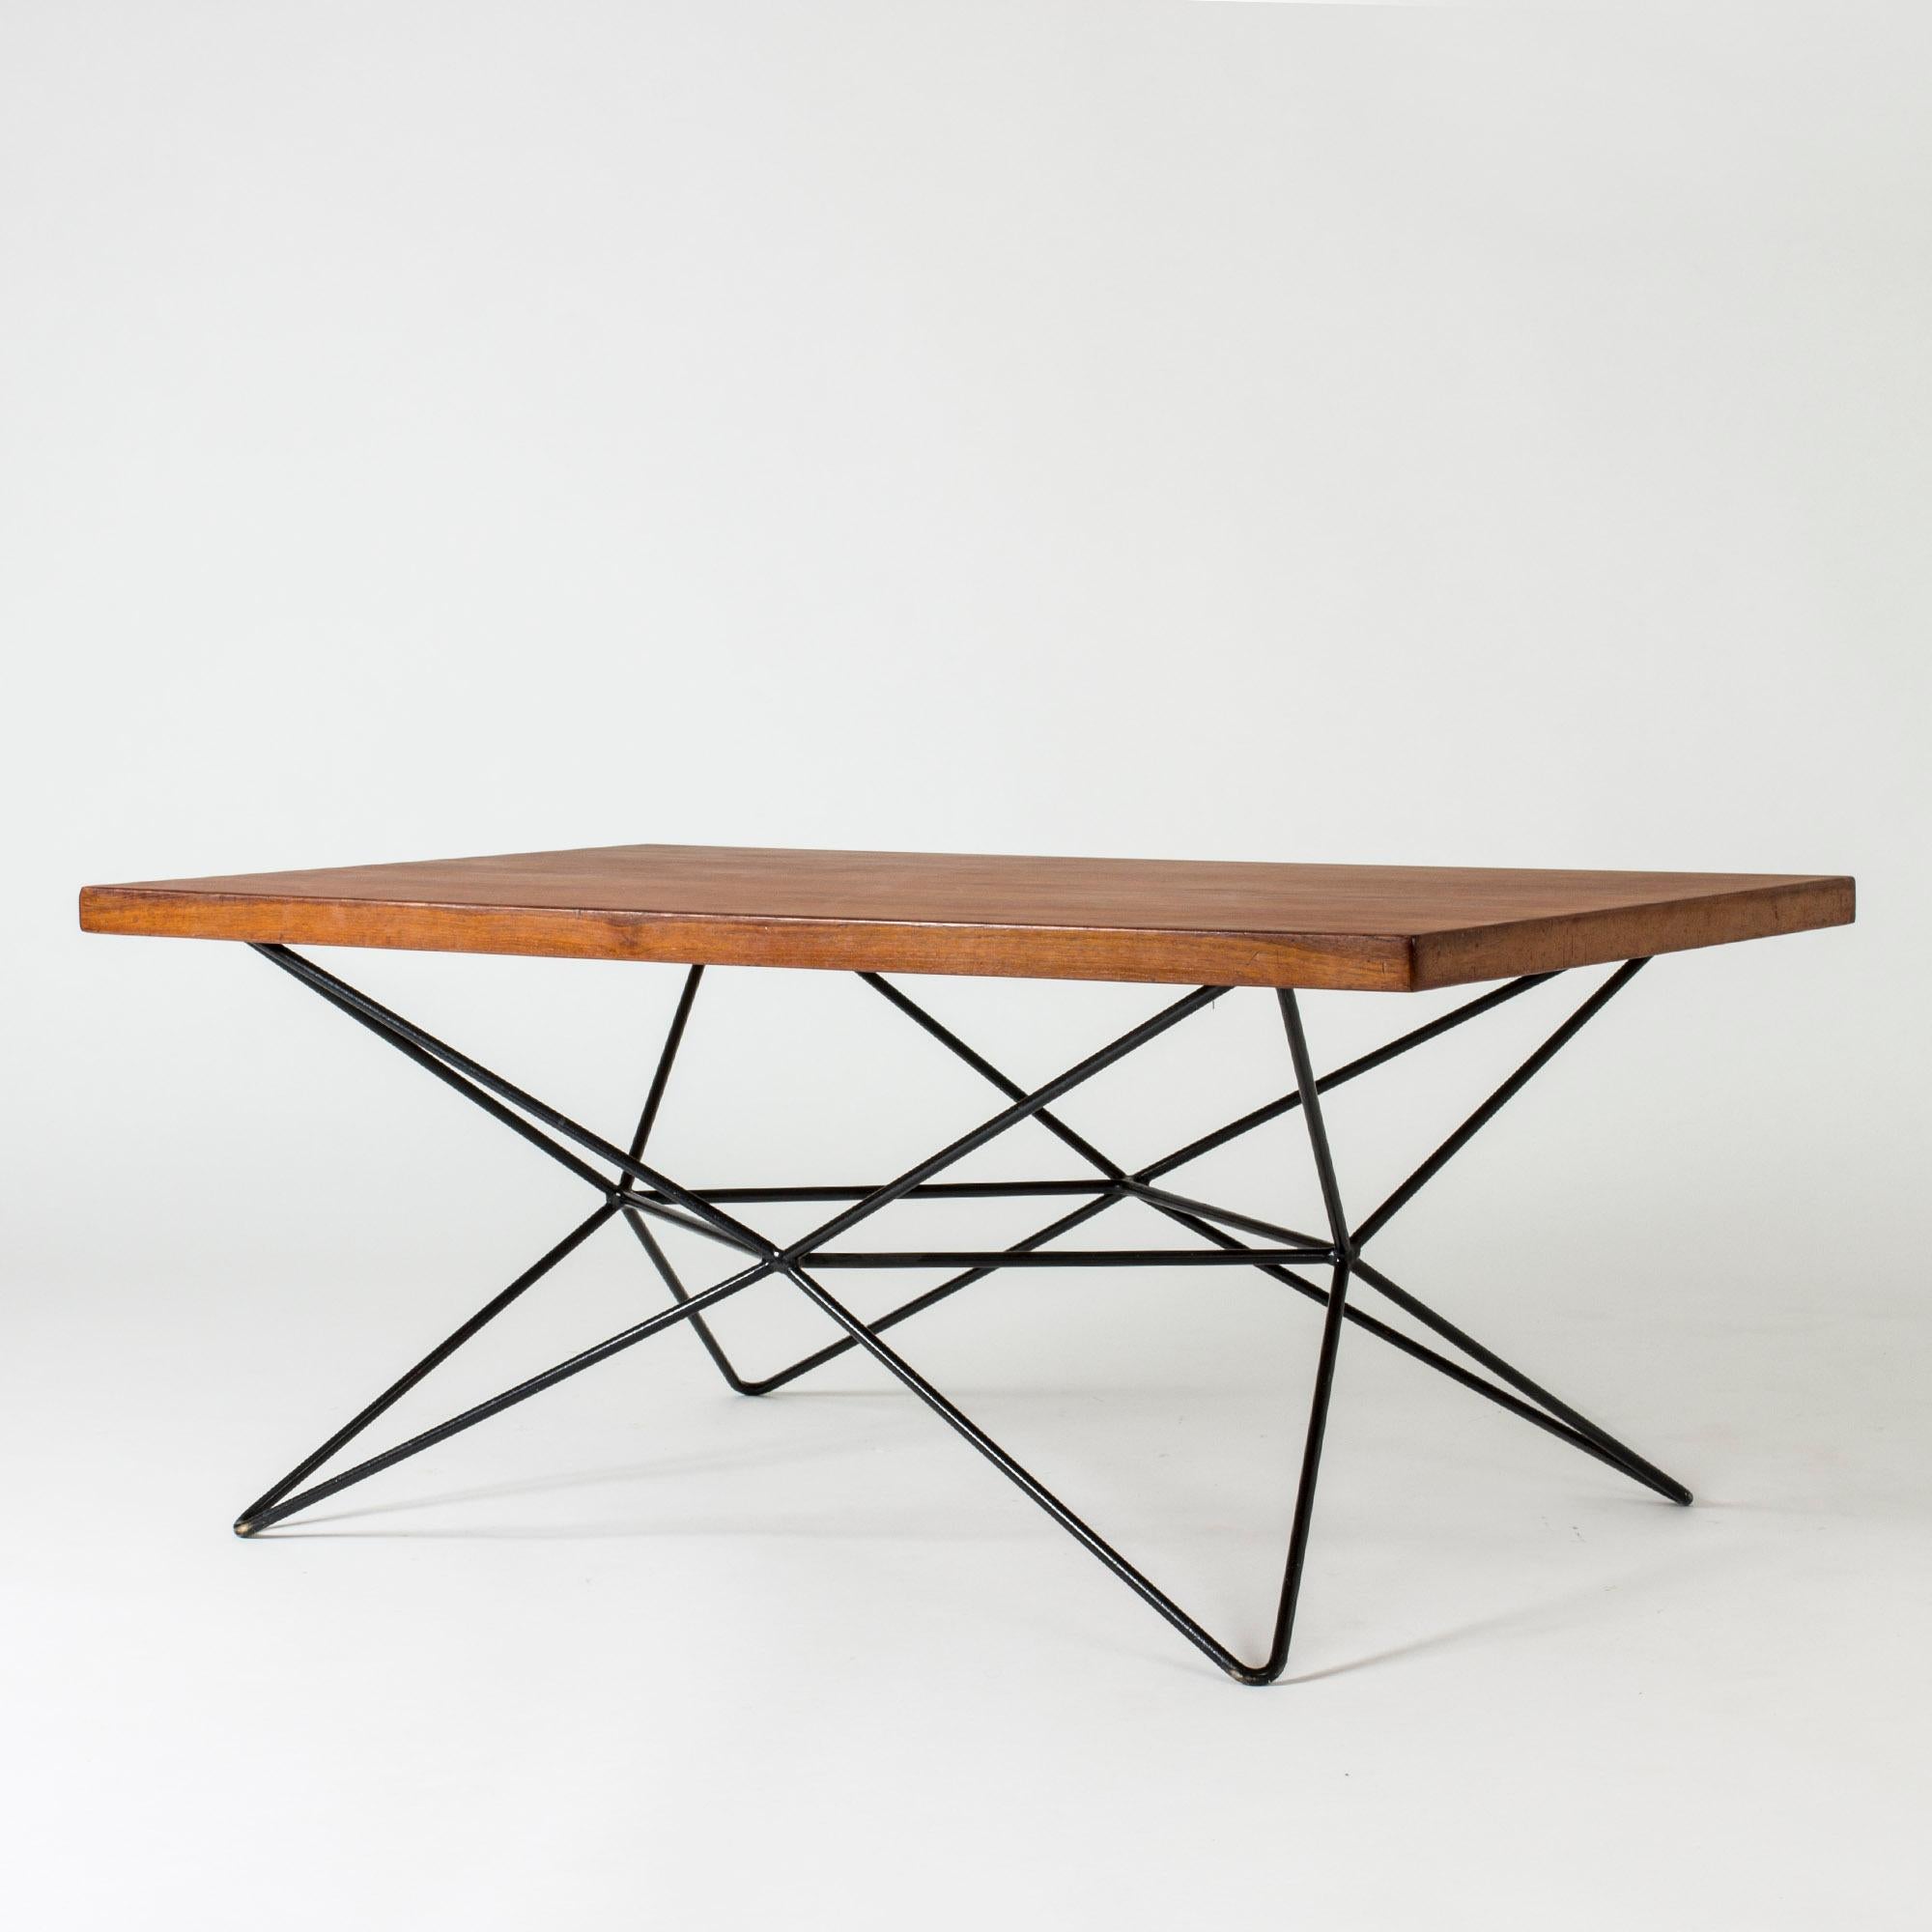 Genialer, markanter Tisch des Architekten Bengt Johan Gullberg, der in drei Positionen gebracht werden kann: Couchtisch, Esstisch und Bartisch. Das lackierte Metallgestell wird an verschiedenen Enden gedreht, um sich den drei Höhen anzupassen, und